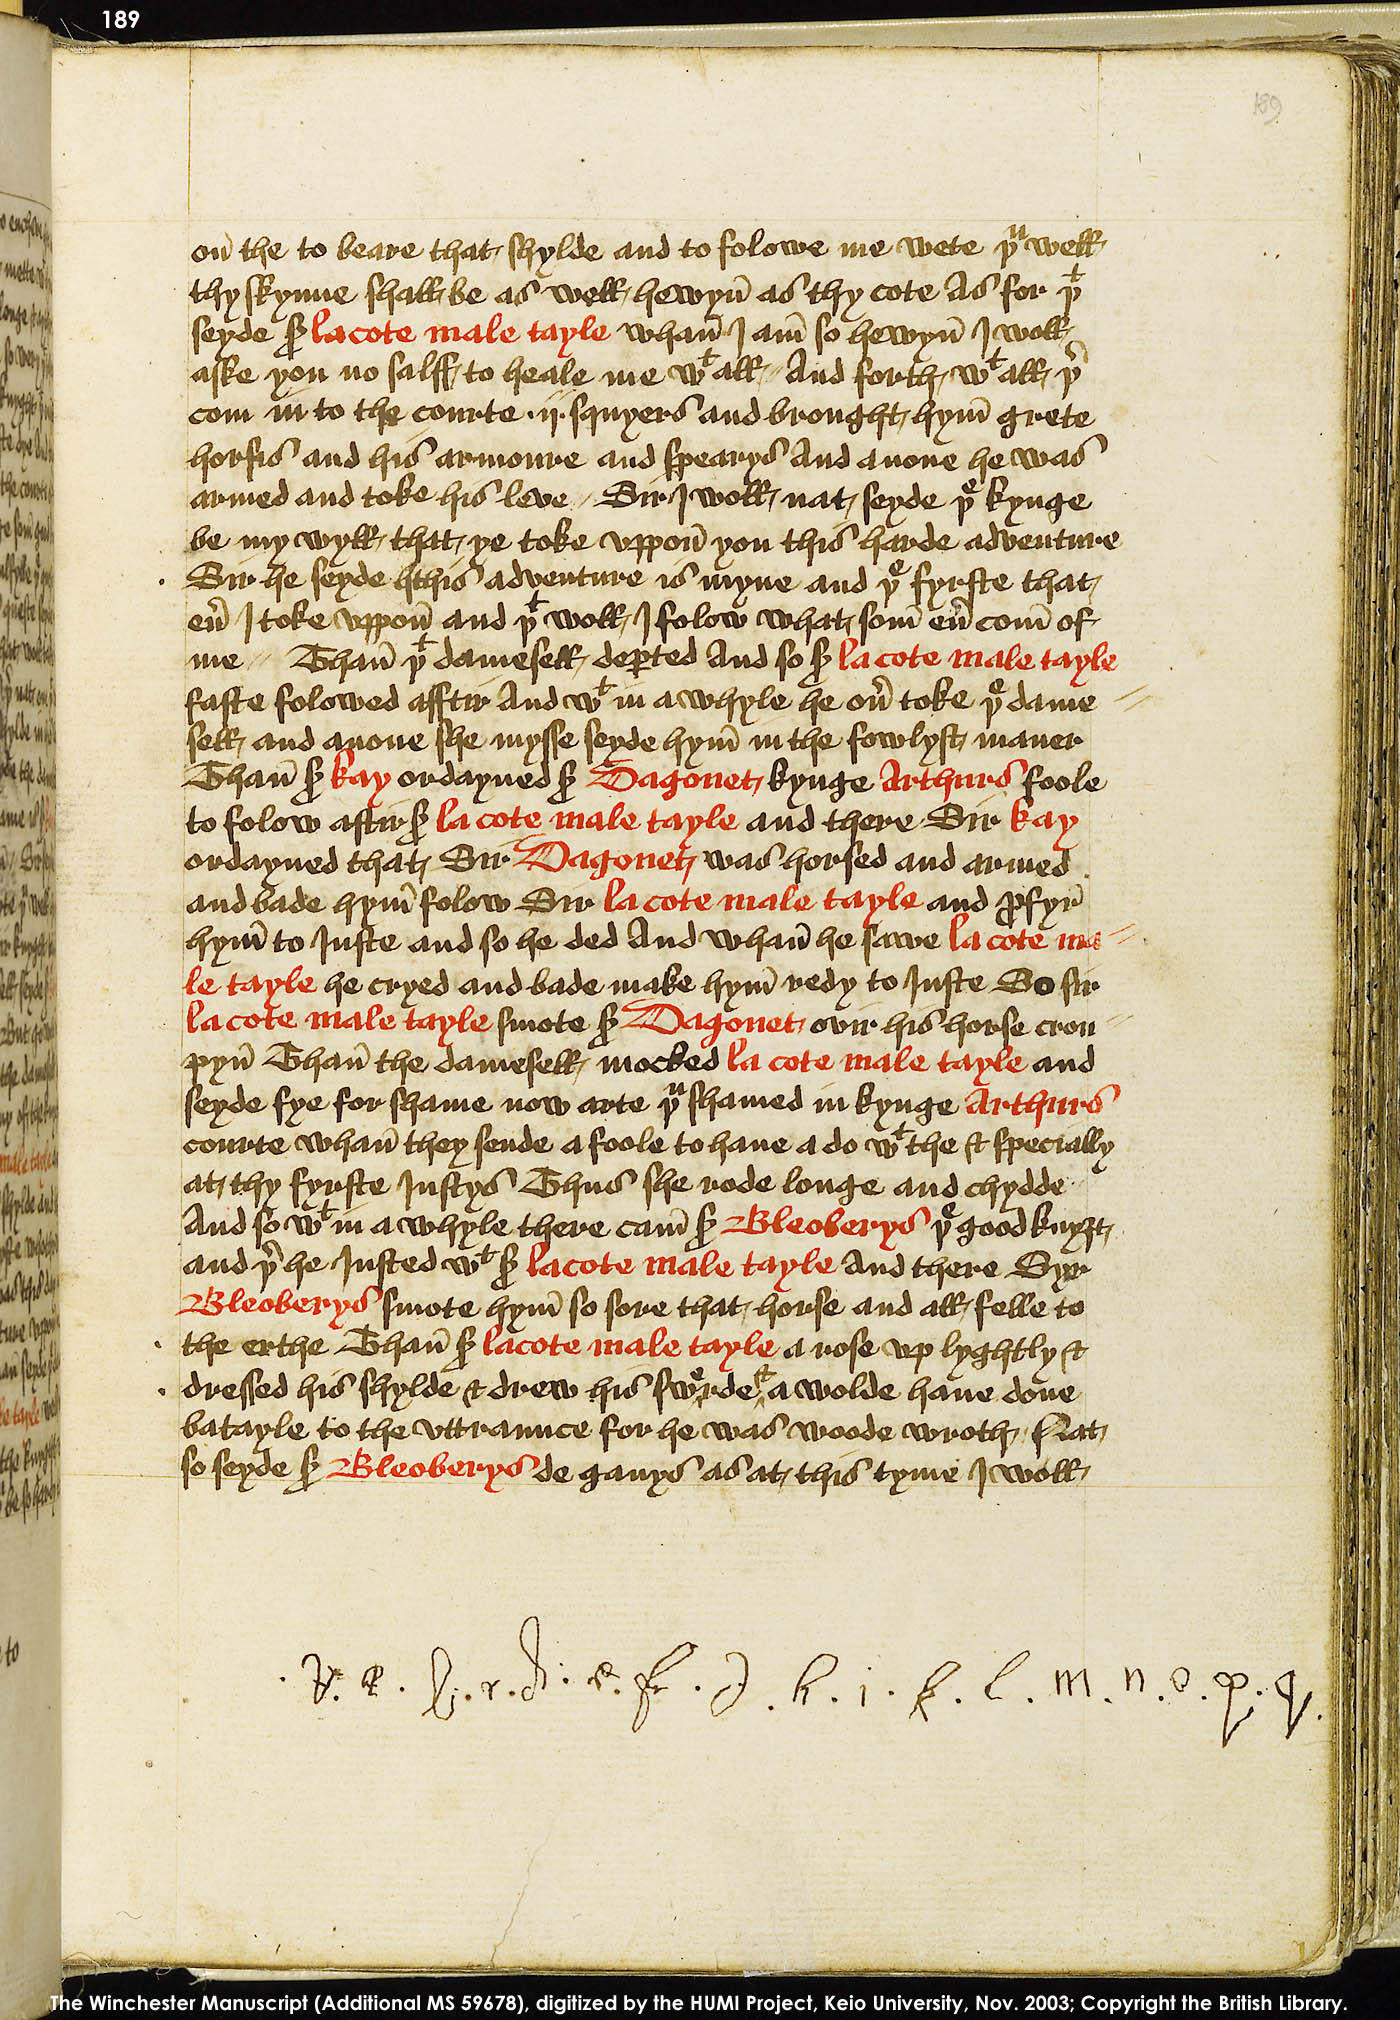 Folio 189r